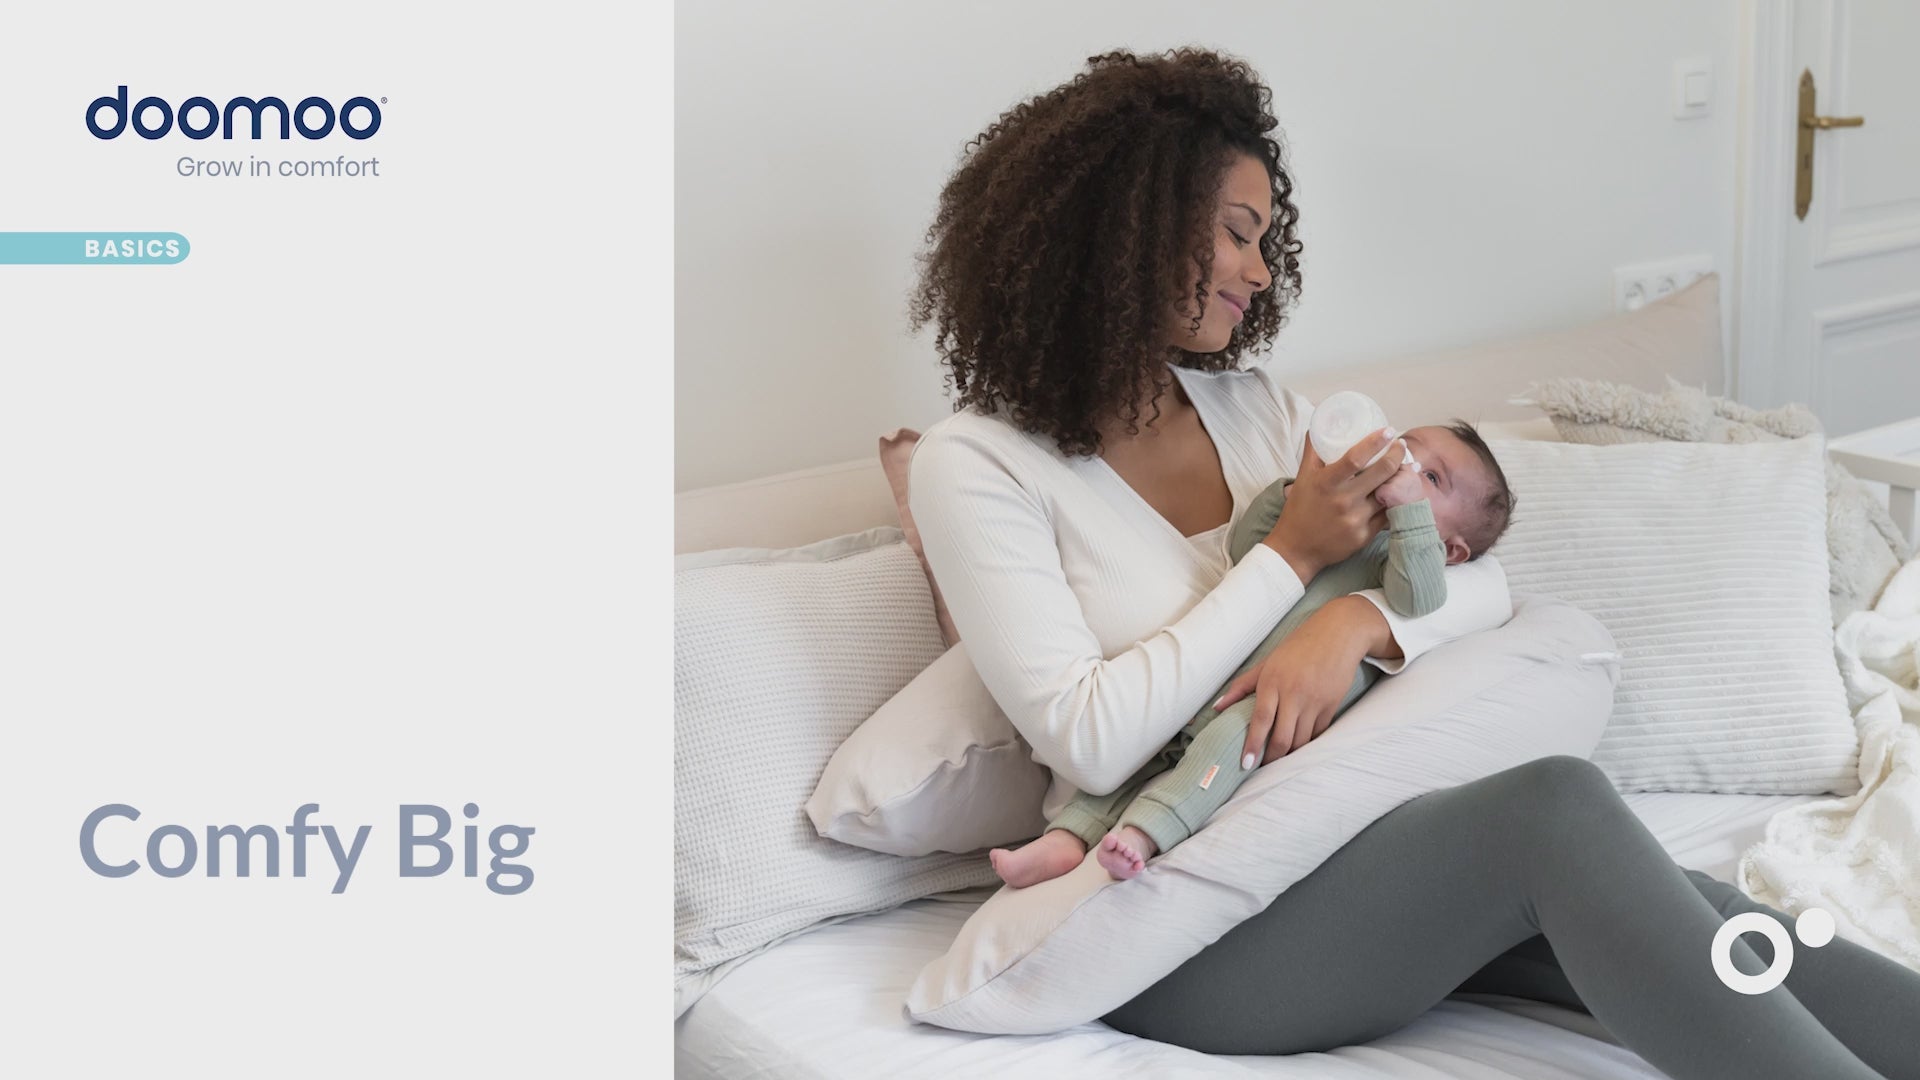 Grand coussin de grossesse et de maternité en mousseline de coton biologique. Pour dormir, allaiter et se détendre confortablement. Rembourrage en microperles très fines pour un confort optimal.